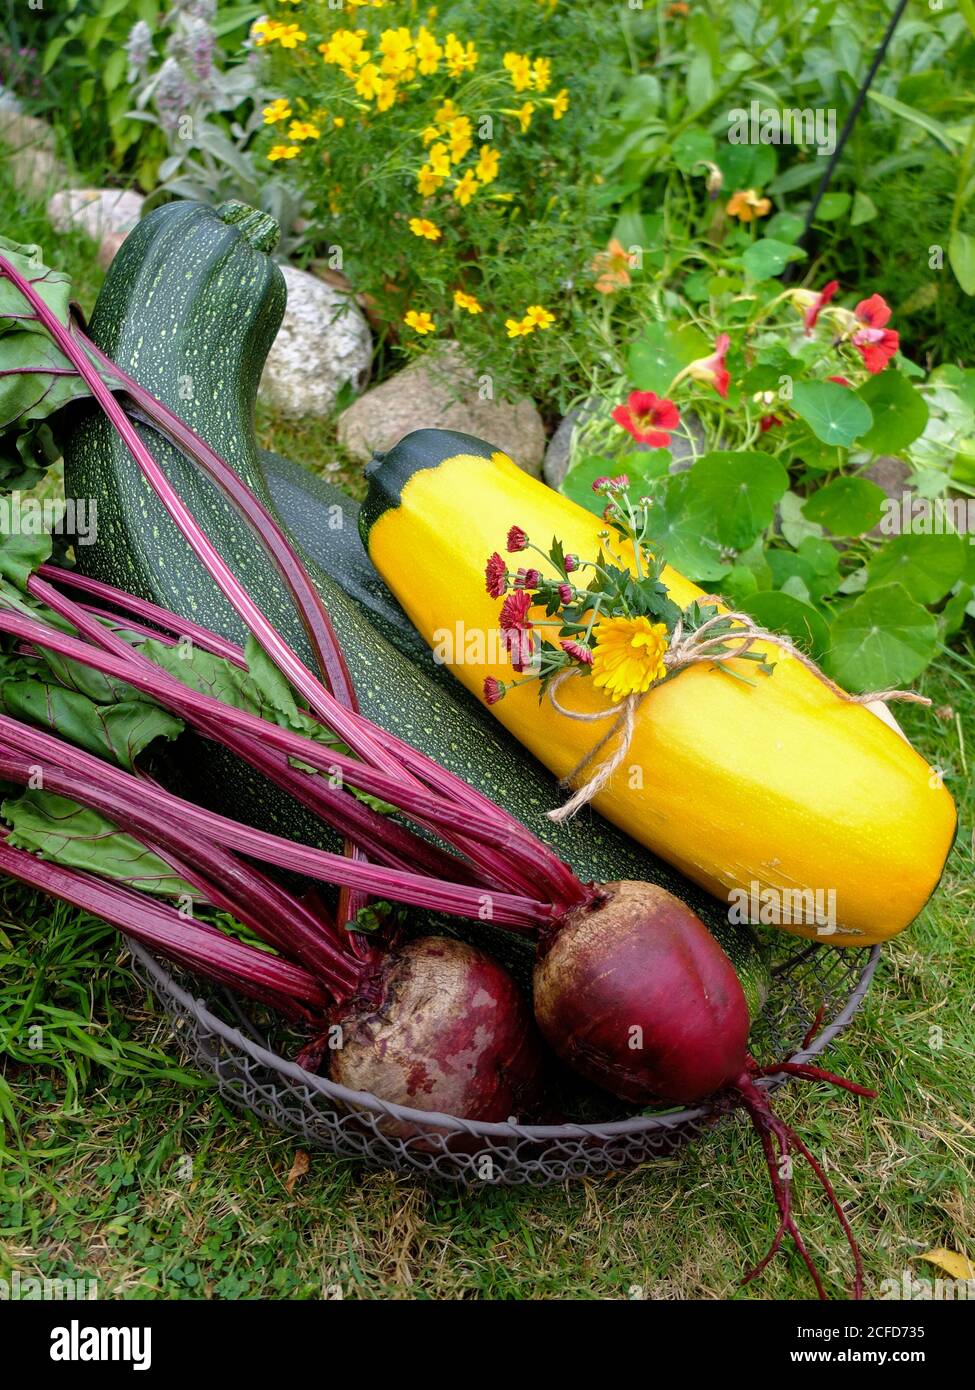 Zucchini Ernte in einem Korb - 'Defender' und 'Zephyr' Sorte, sowie Rote Bete Stockfoto